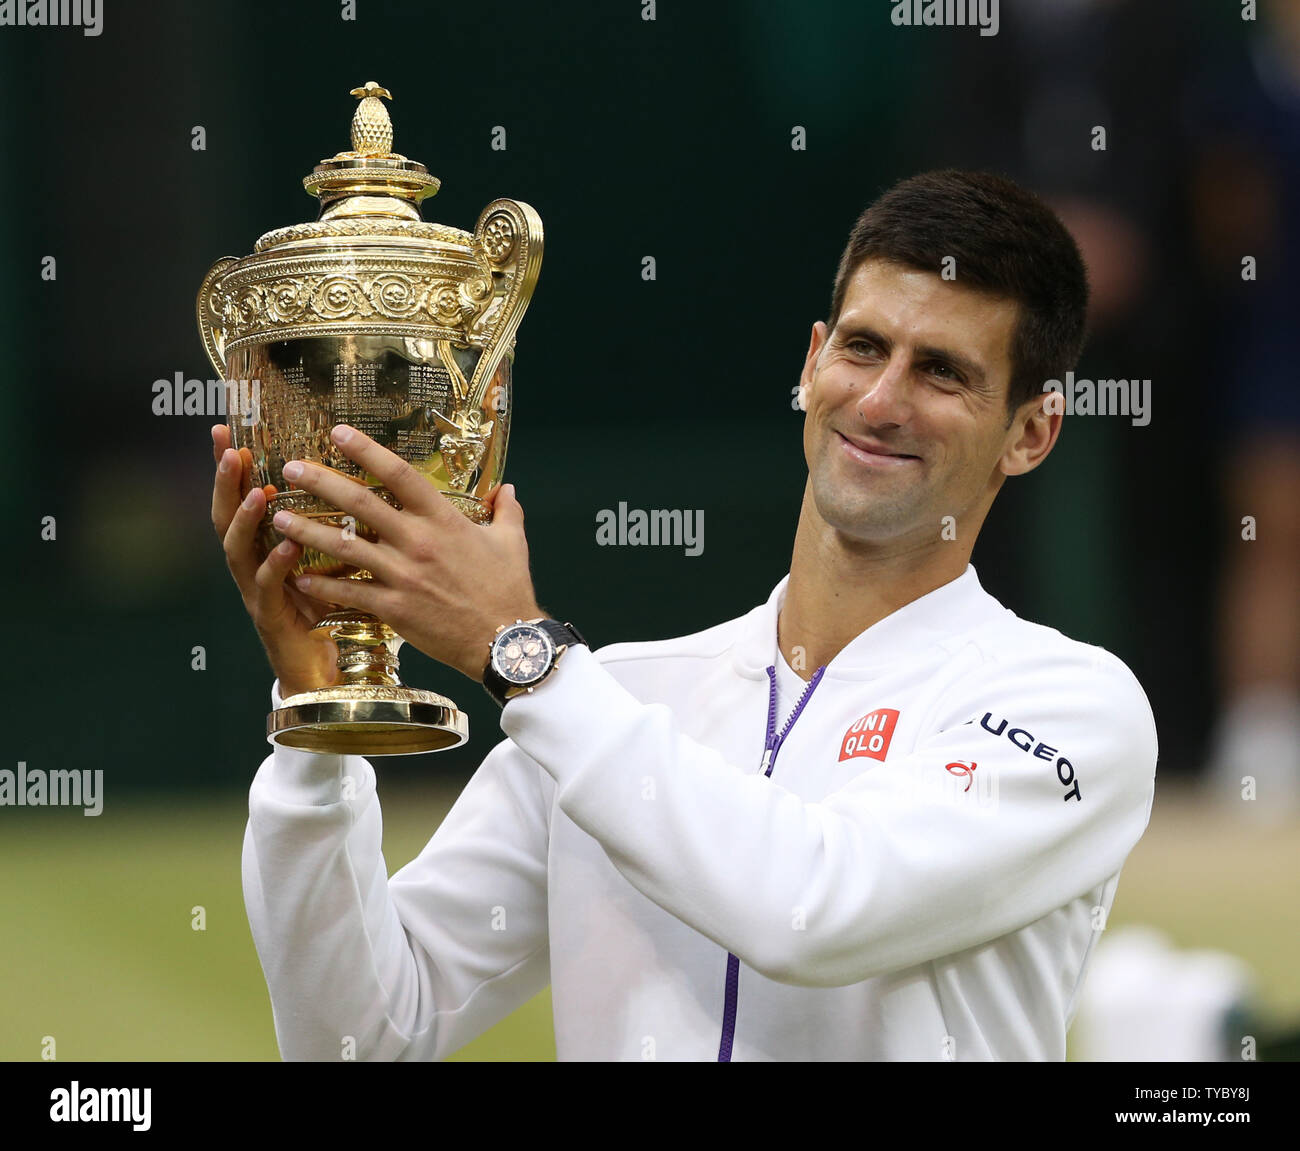 Serbian Novak Djokovic holds the trophy after winning the 2015 Wimbledon  Men's Singles Final against Swiss